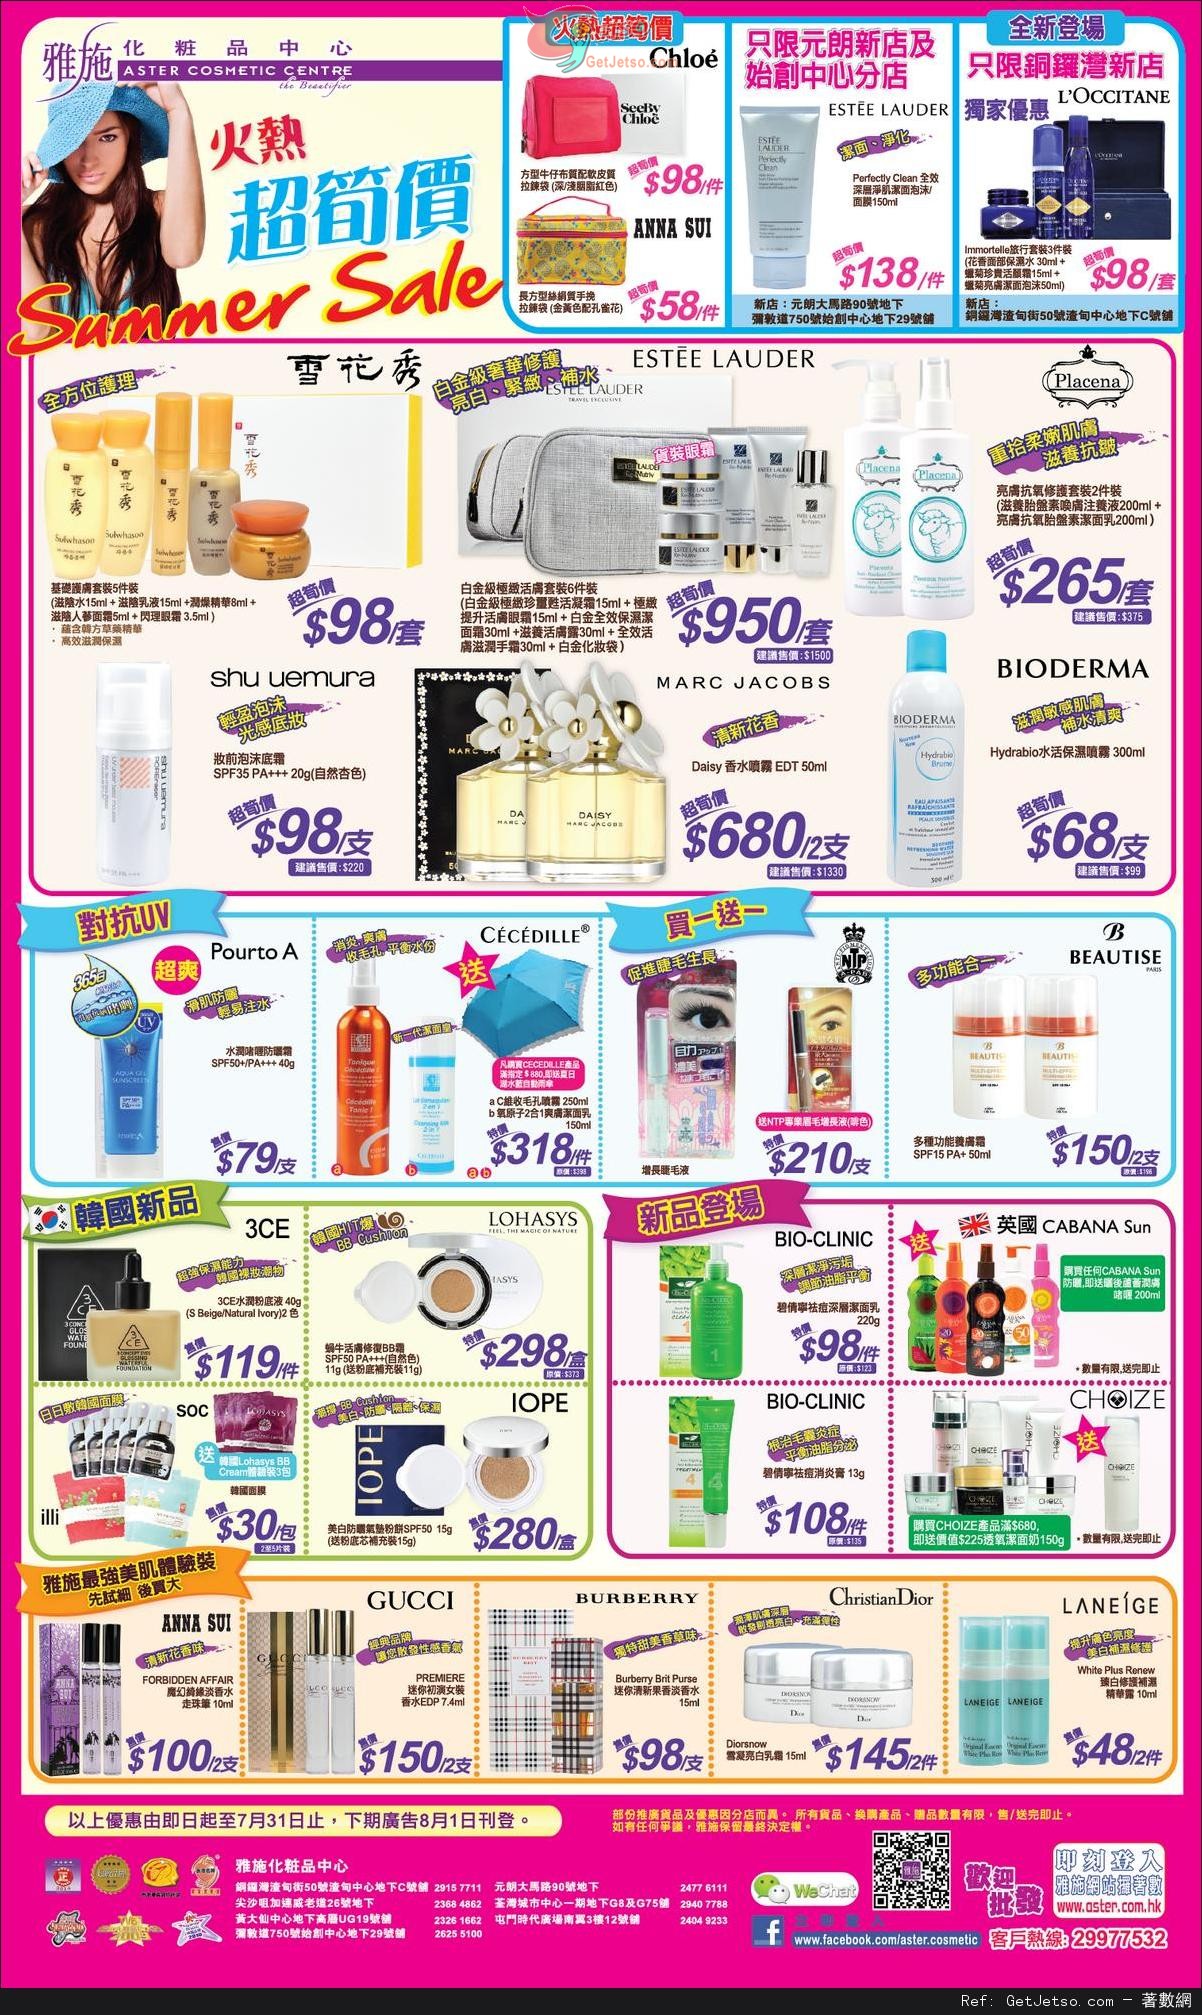 雅施火熱超筍價購物優惠(至14年7月31日)圖片1